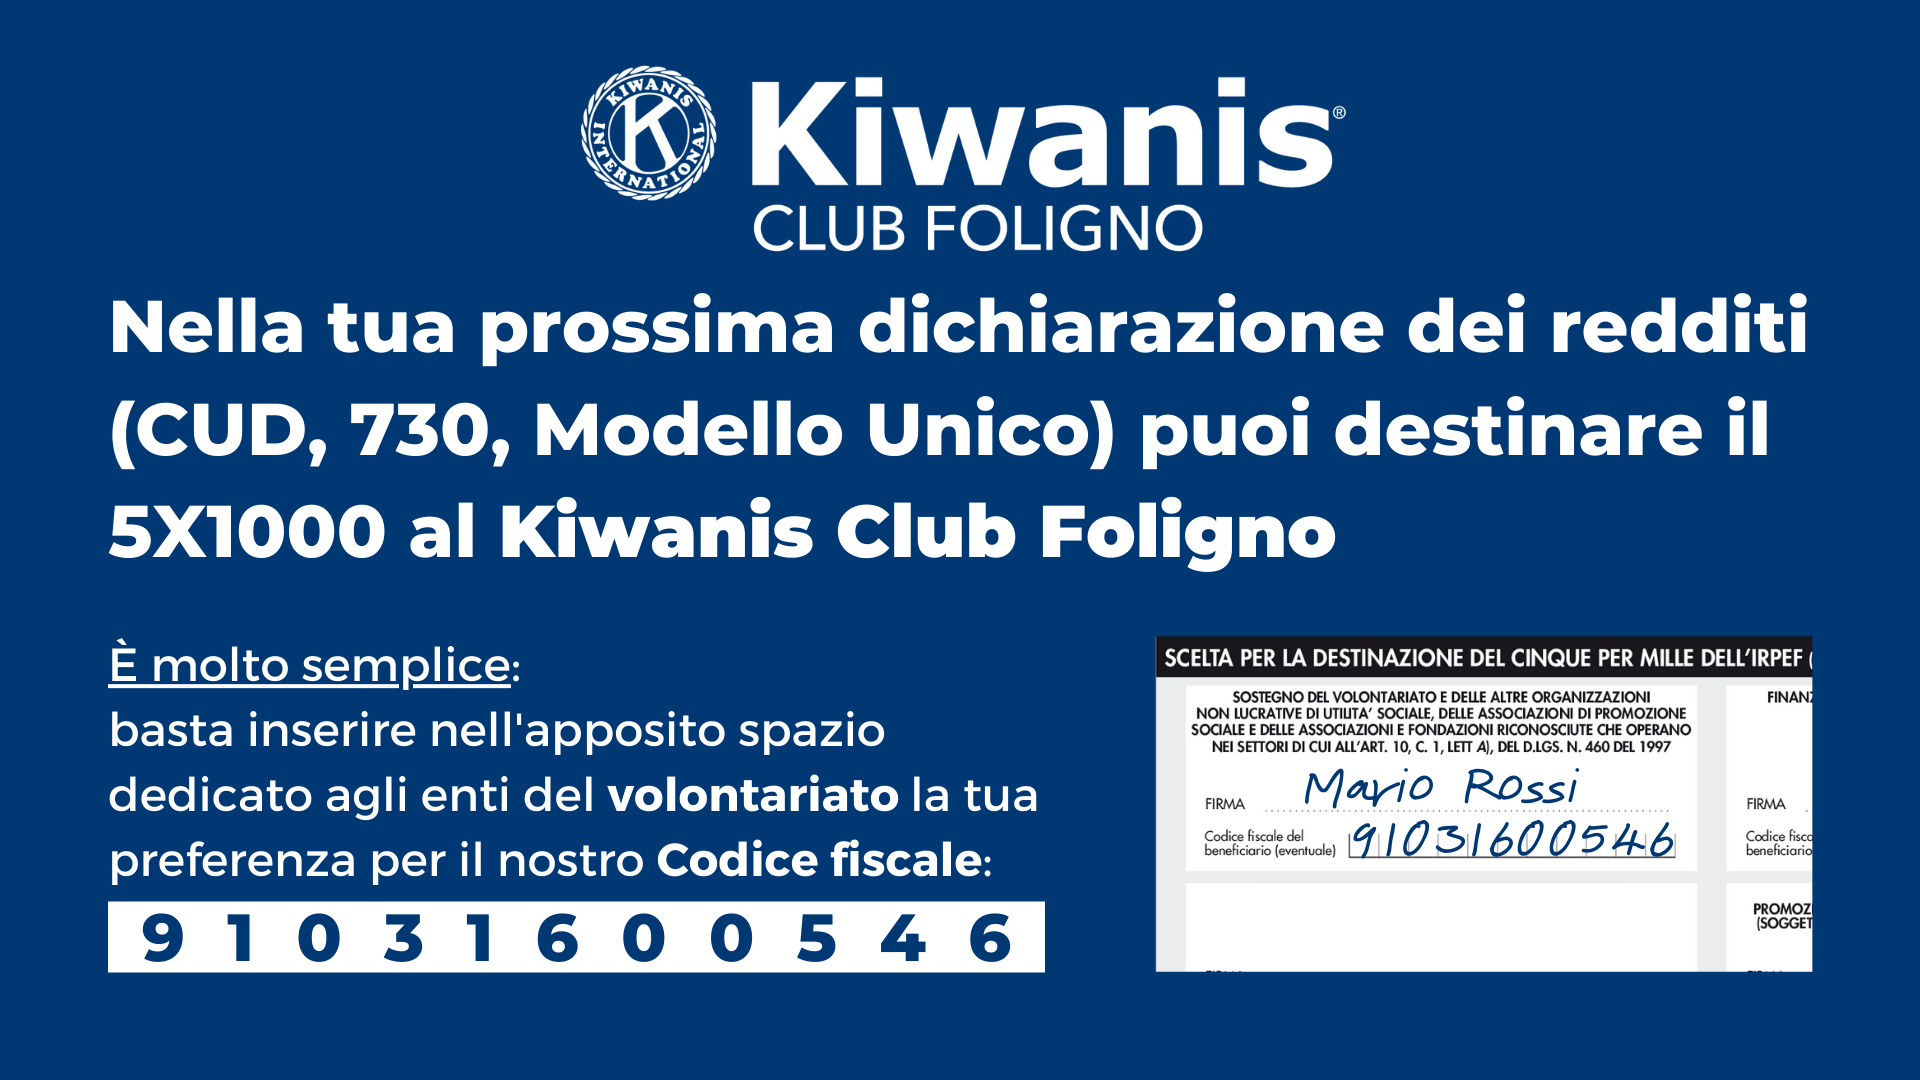 nella tua prossima dichiarazione dei redditi (cud, 730, modello unico) puoi destinare il 5x1000 al kiwanis club foligno